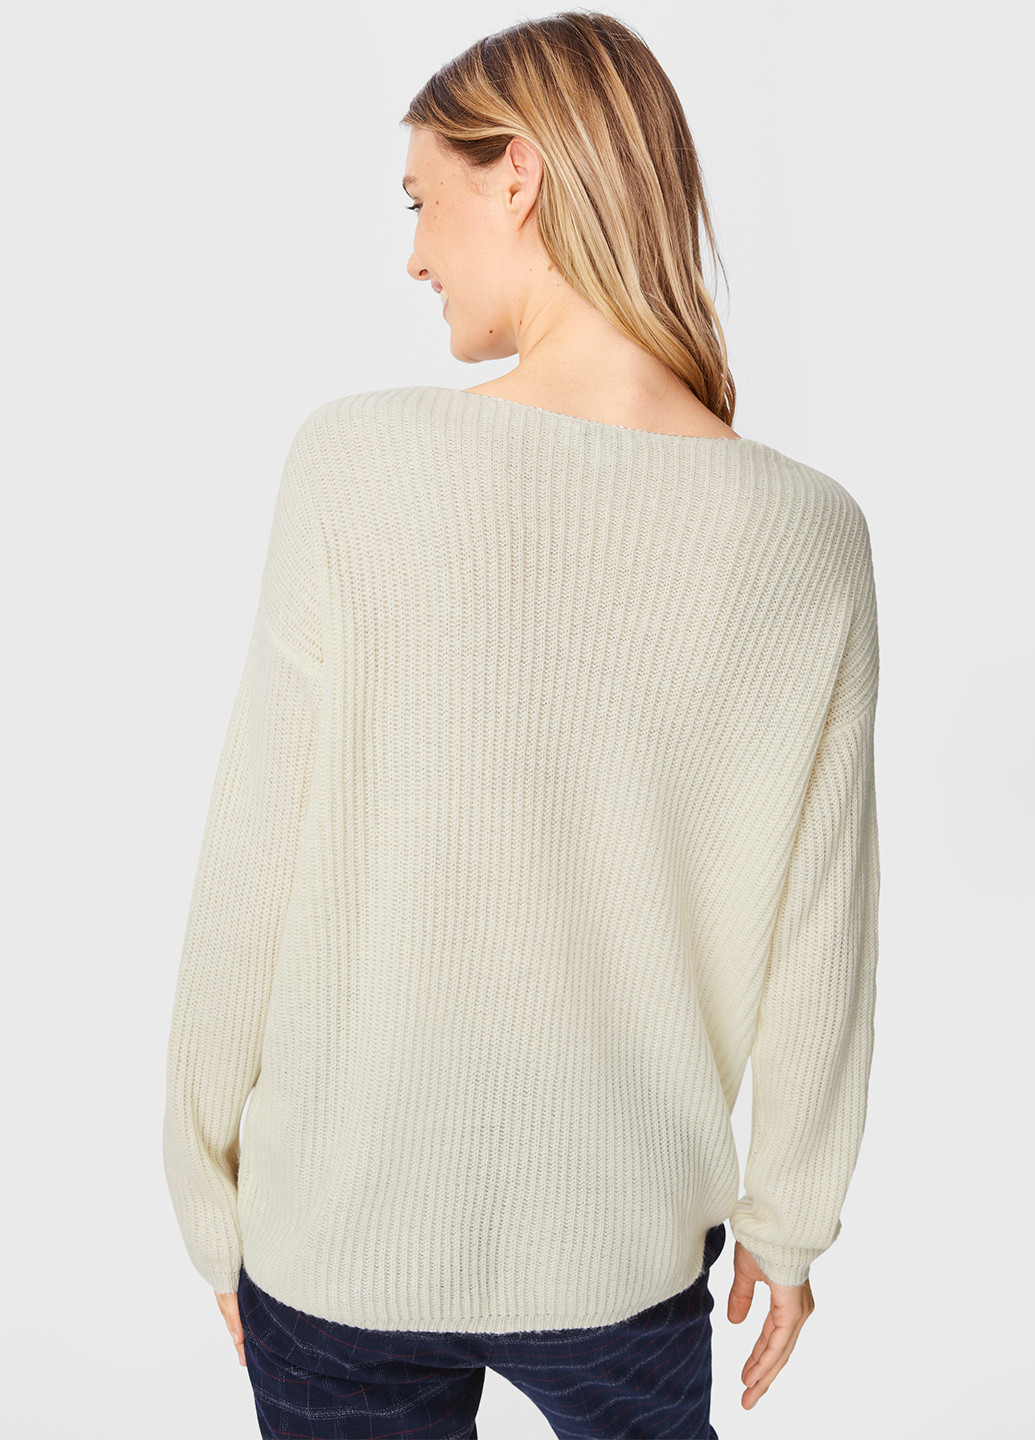 Светло-бежевый демисезонный пуловер пуловер C&A